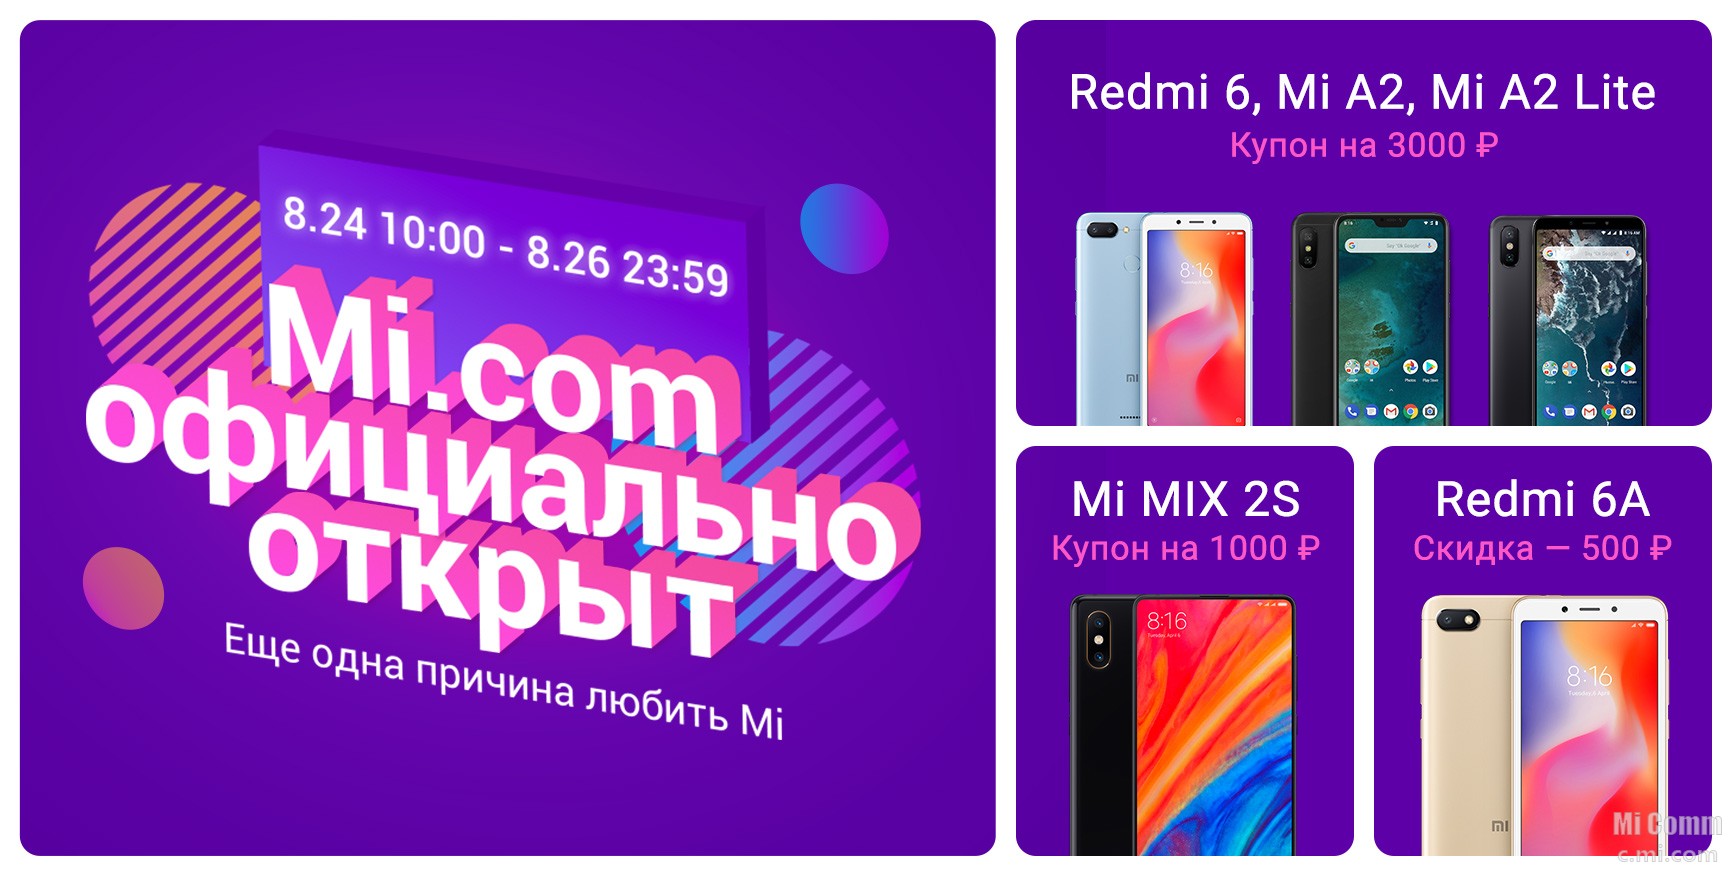 Промокод на микс. Xiaomi community Russia. Купон от Лайт мобайл.